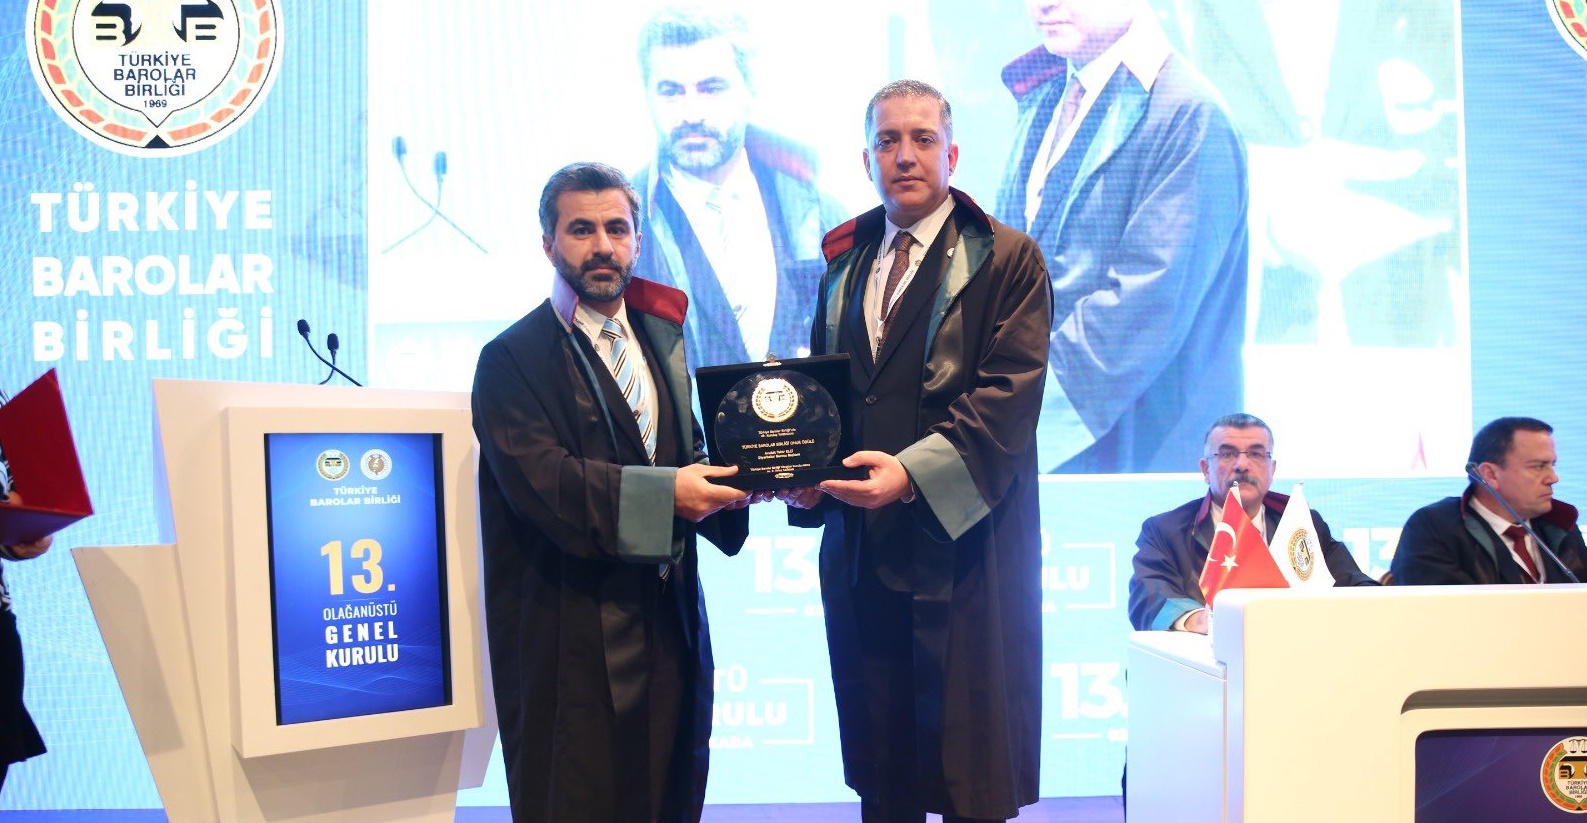 Tahir Elçi'ye verilen TBB Onur ödülünü Nahit Eren teslim aldı